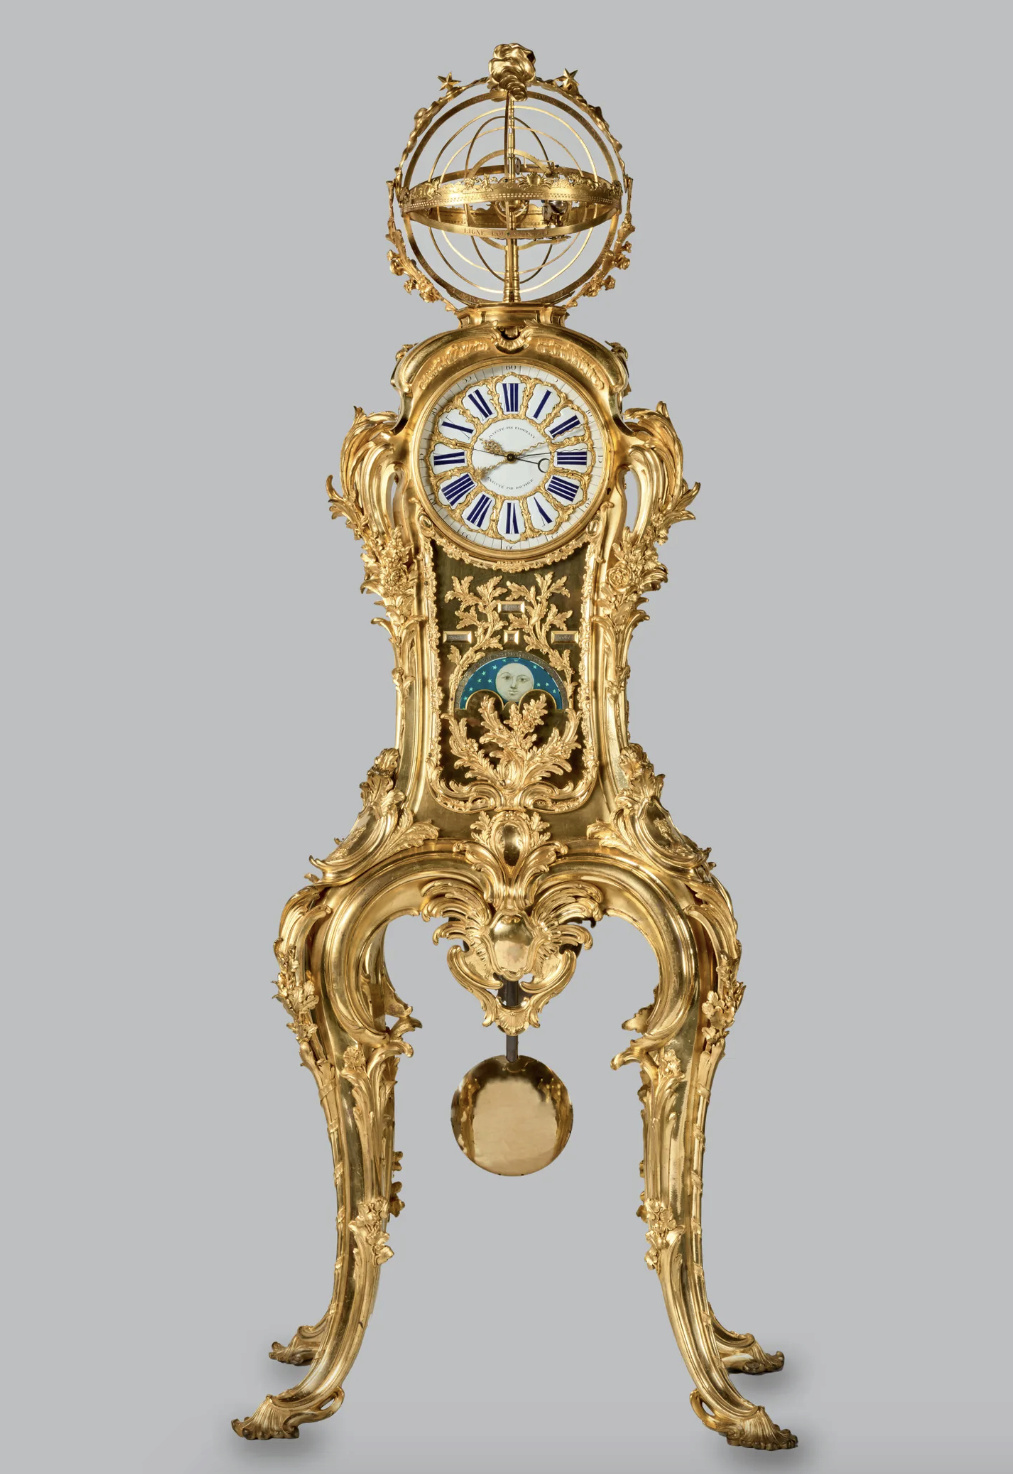 Horloges et pendules du XVIIIe siècle - Page 5 Capt1221